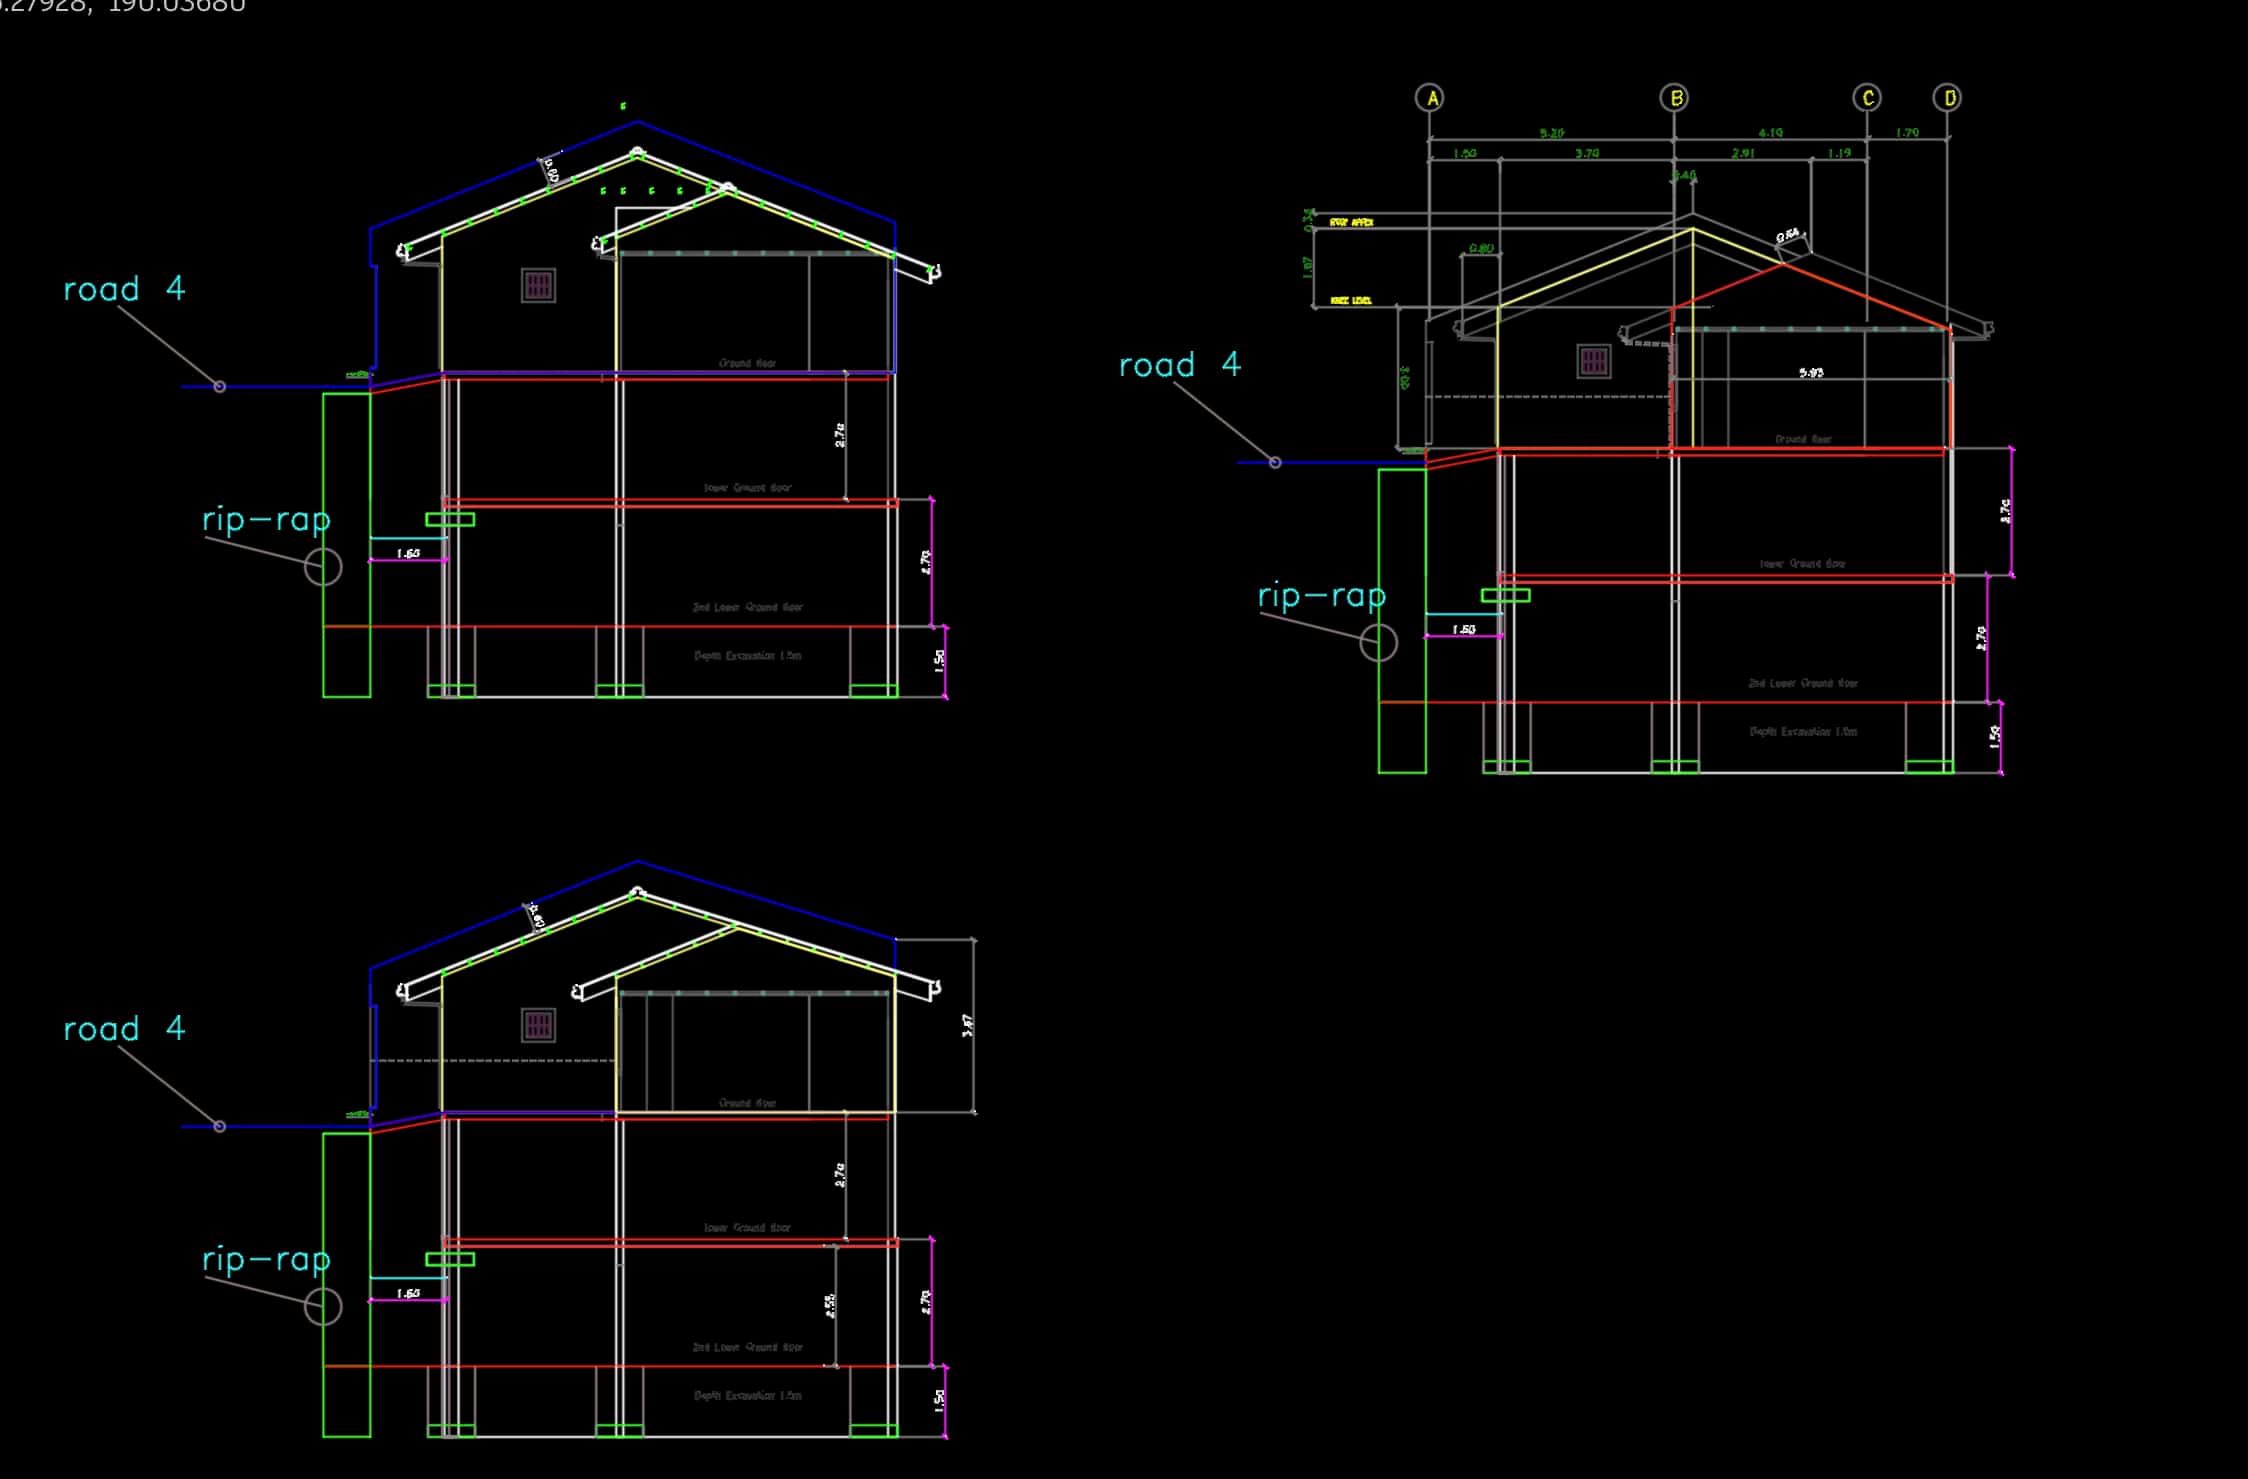 My house design - Gallery - McNeel Forum